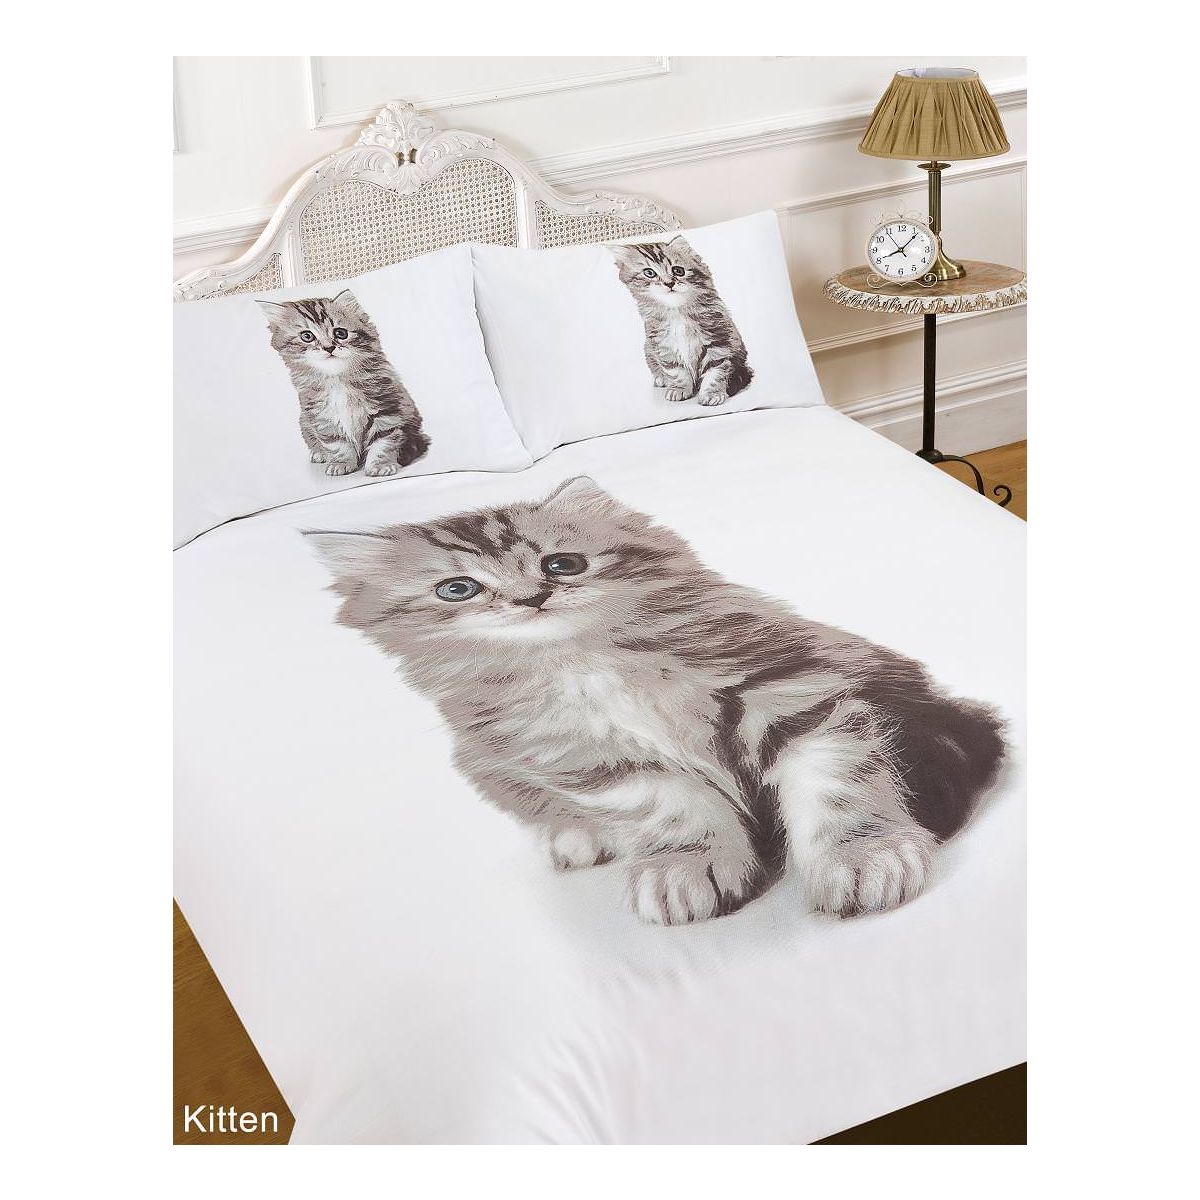 Dreamscene Kitten Animal Print Duvet Cover Bedding Set - Double